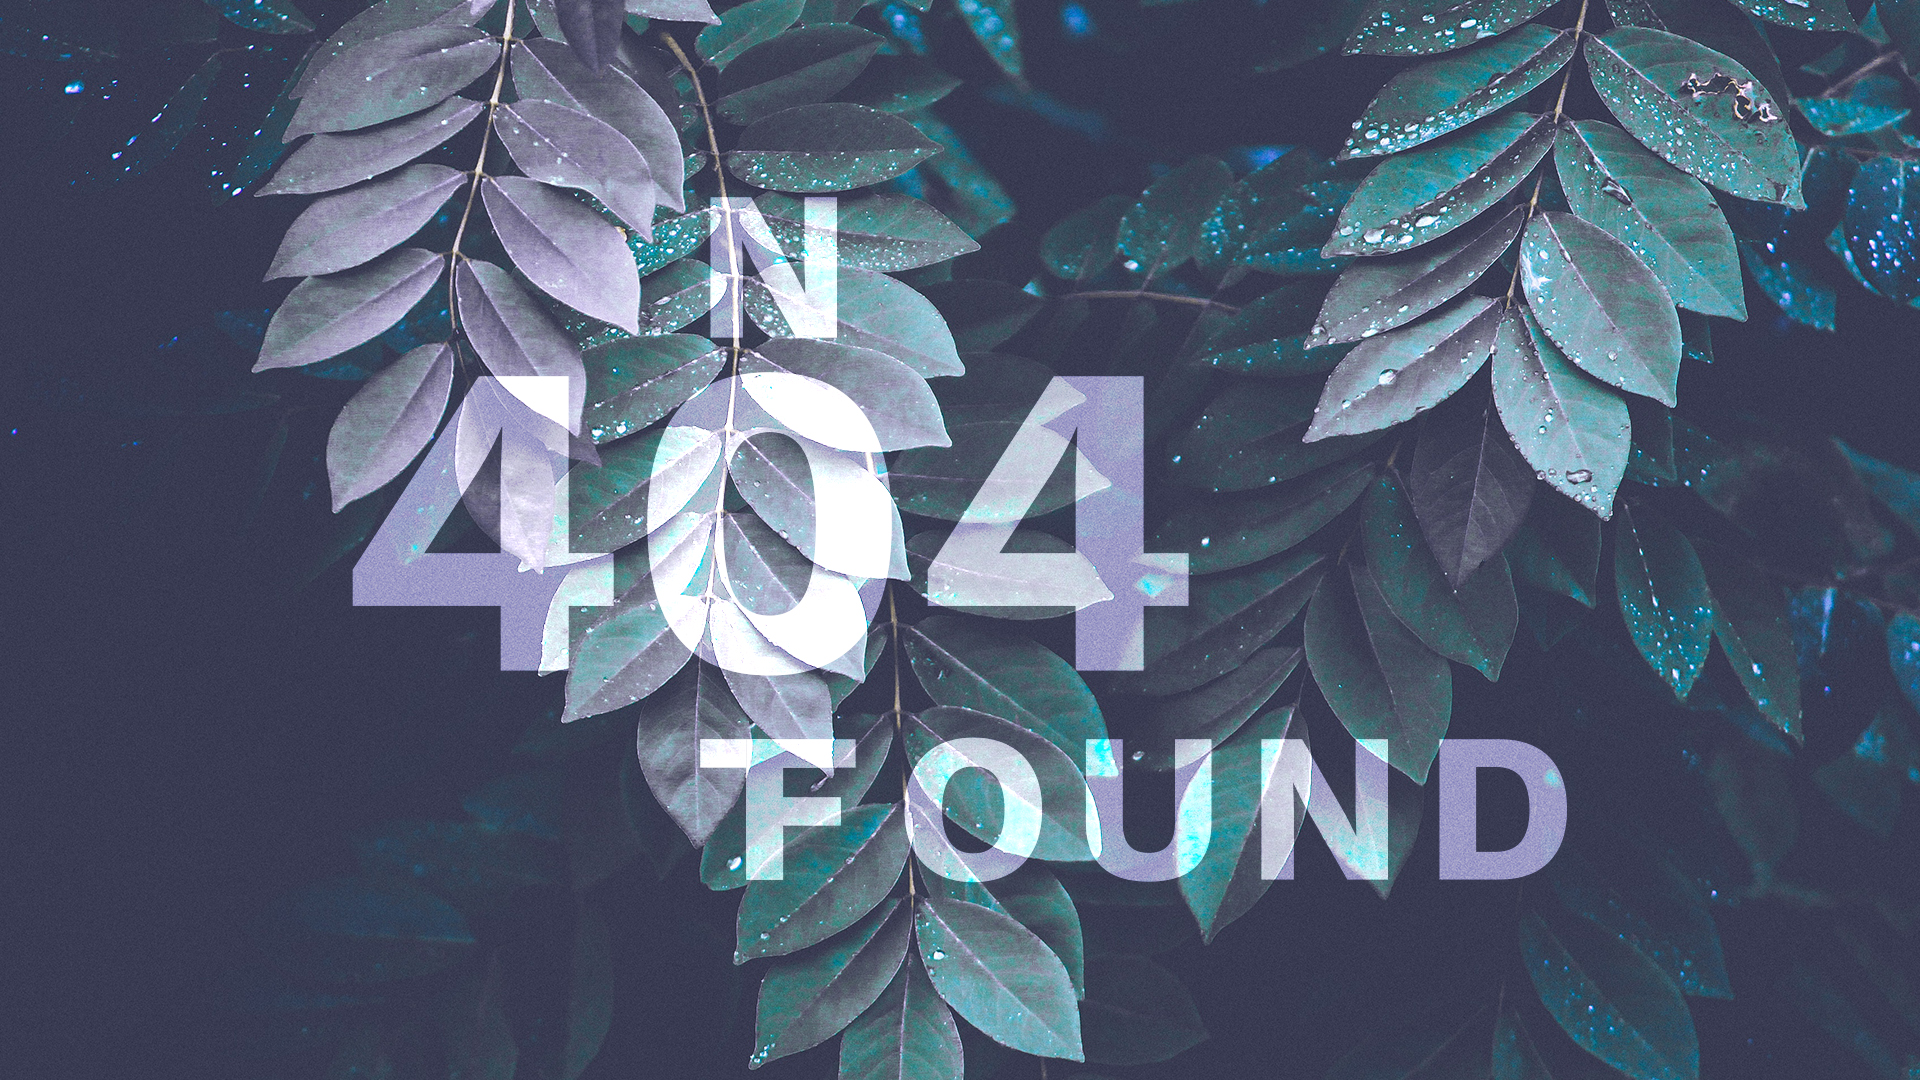 404 - not found